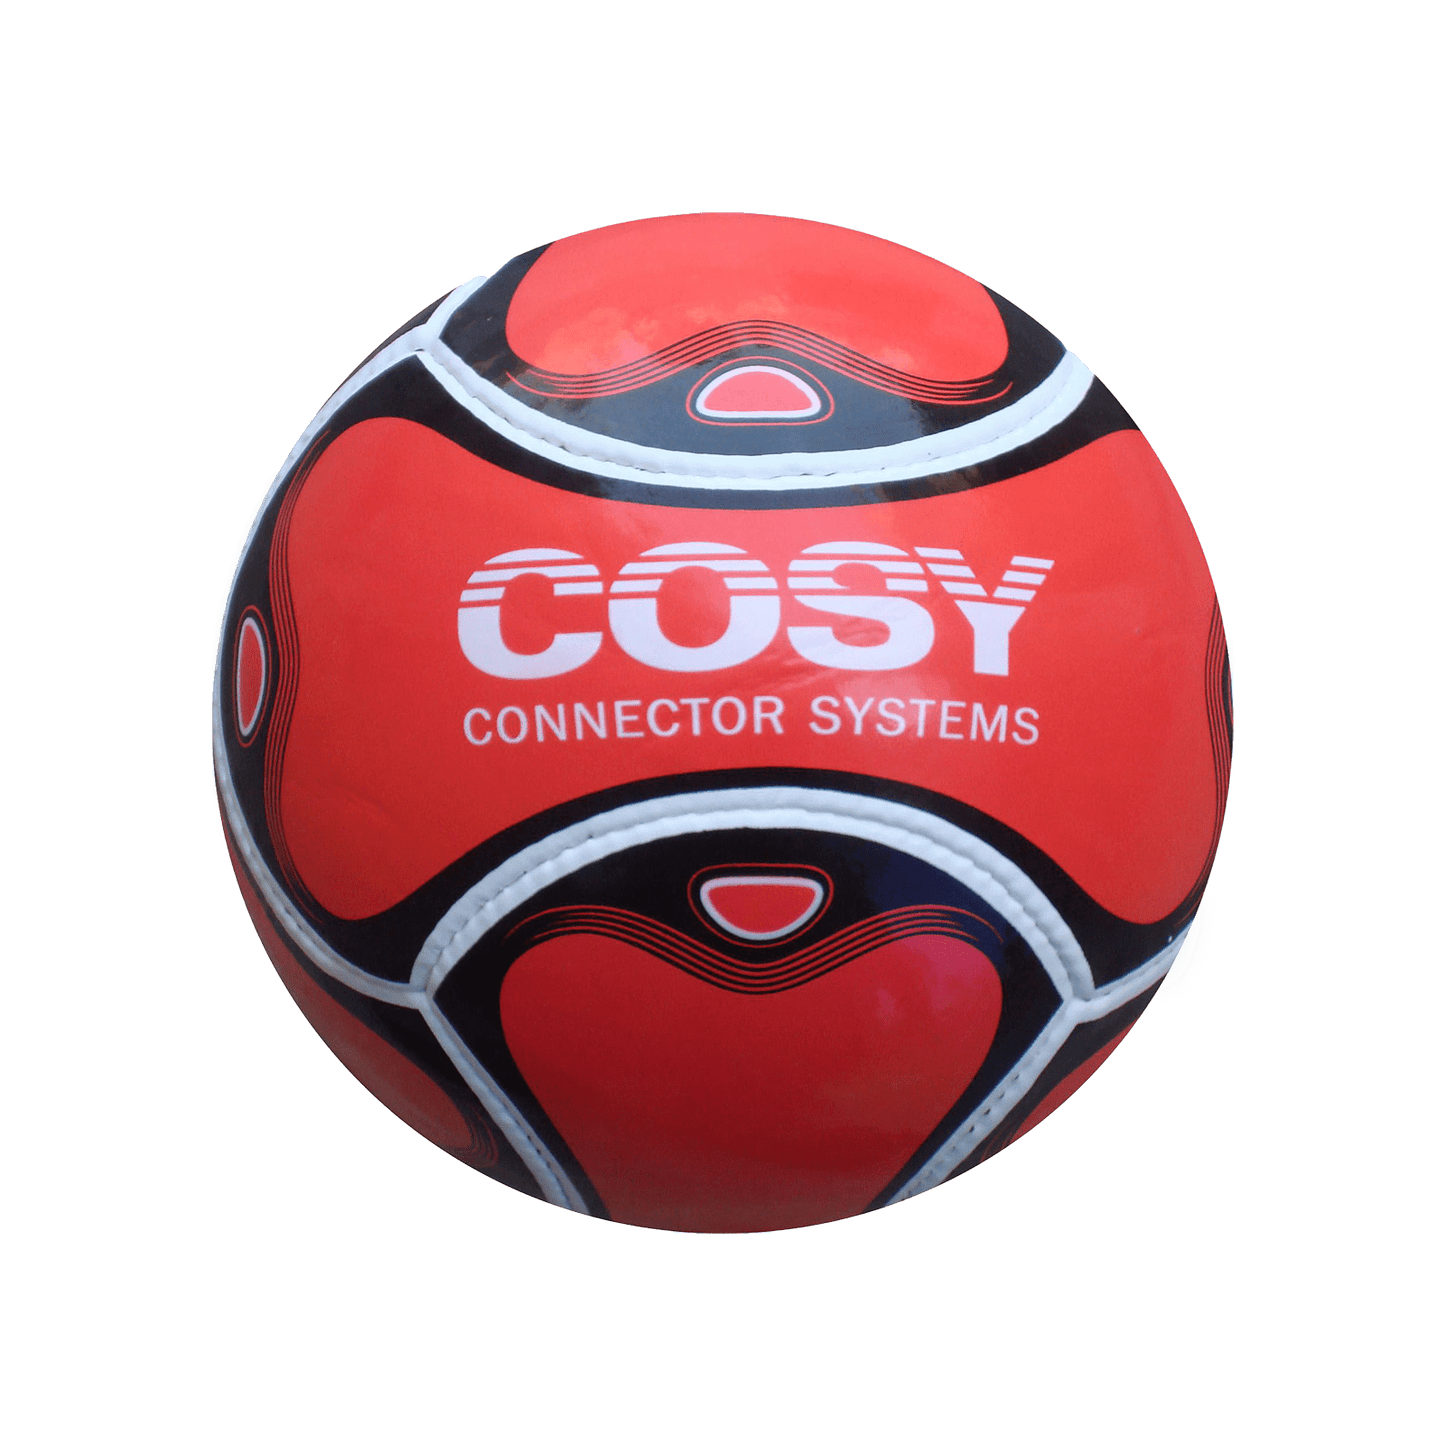 Custom Printed Football